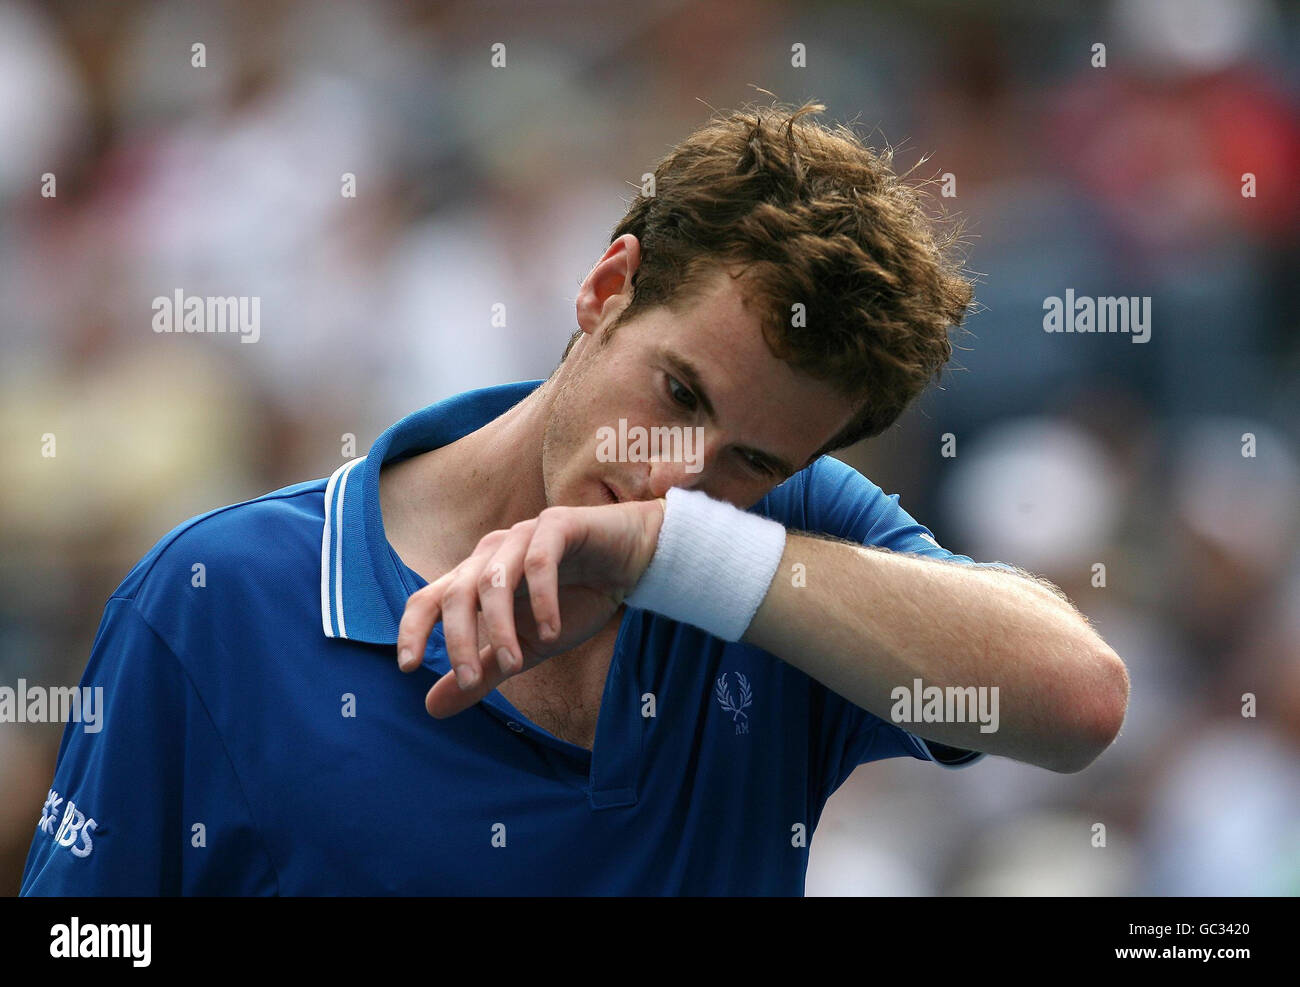 Tennis - 2009 US Open - 9° giorno - Flushing Meadows. Andy Murray della Gran Bretagna in seguito alla sua partita contro il croato Marin Cilic durante gli US Open a Flushing Meadows, New York, USA. Foto Stock